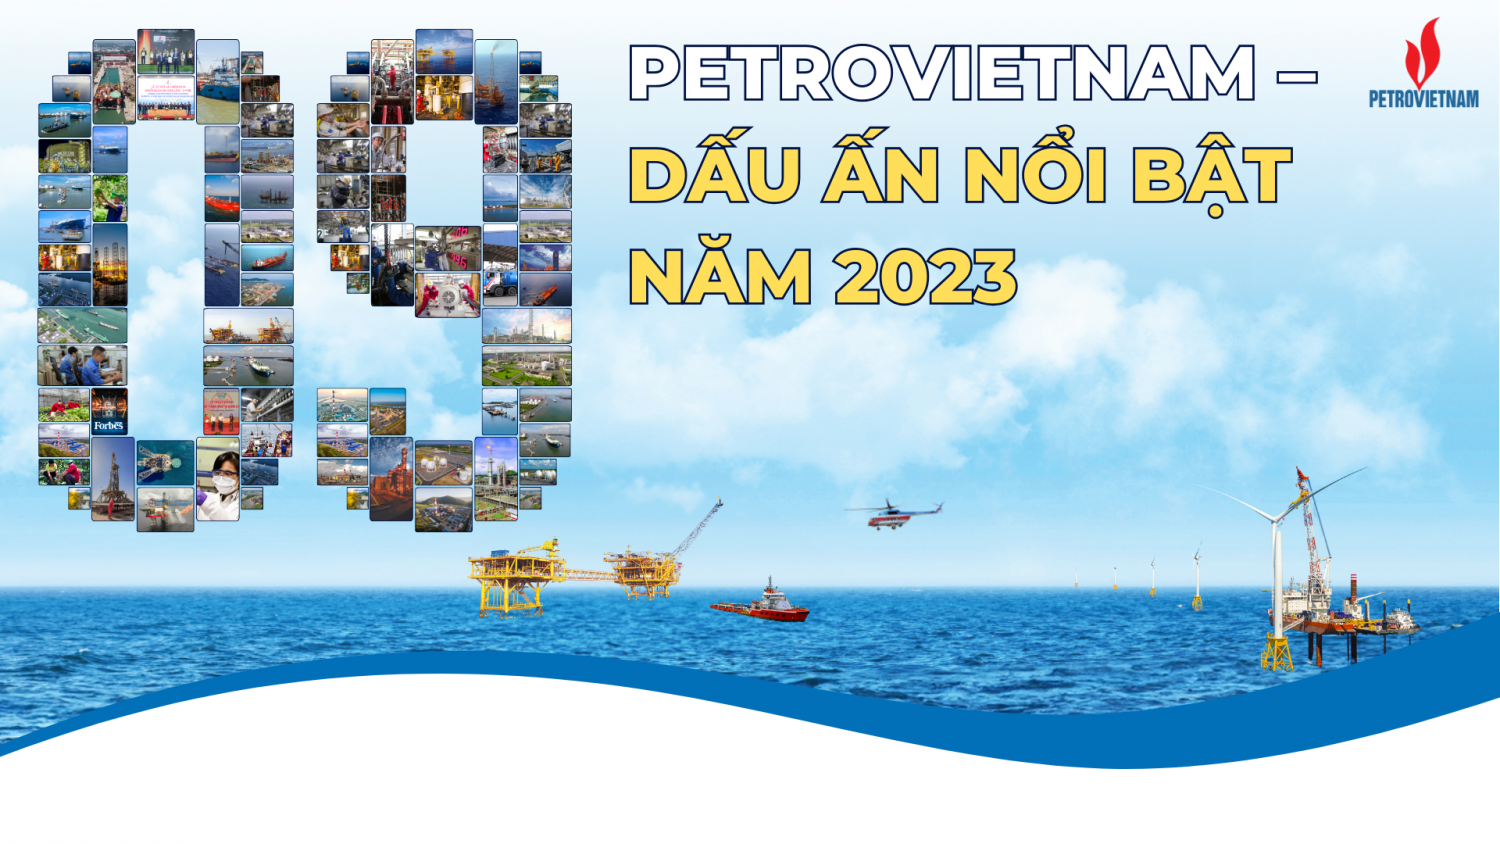 [P-magazine] Petrovietnam - 9 Dấu ấn nổi bật năm 2023